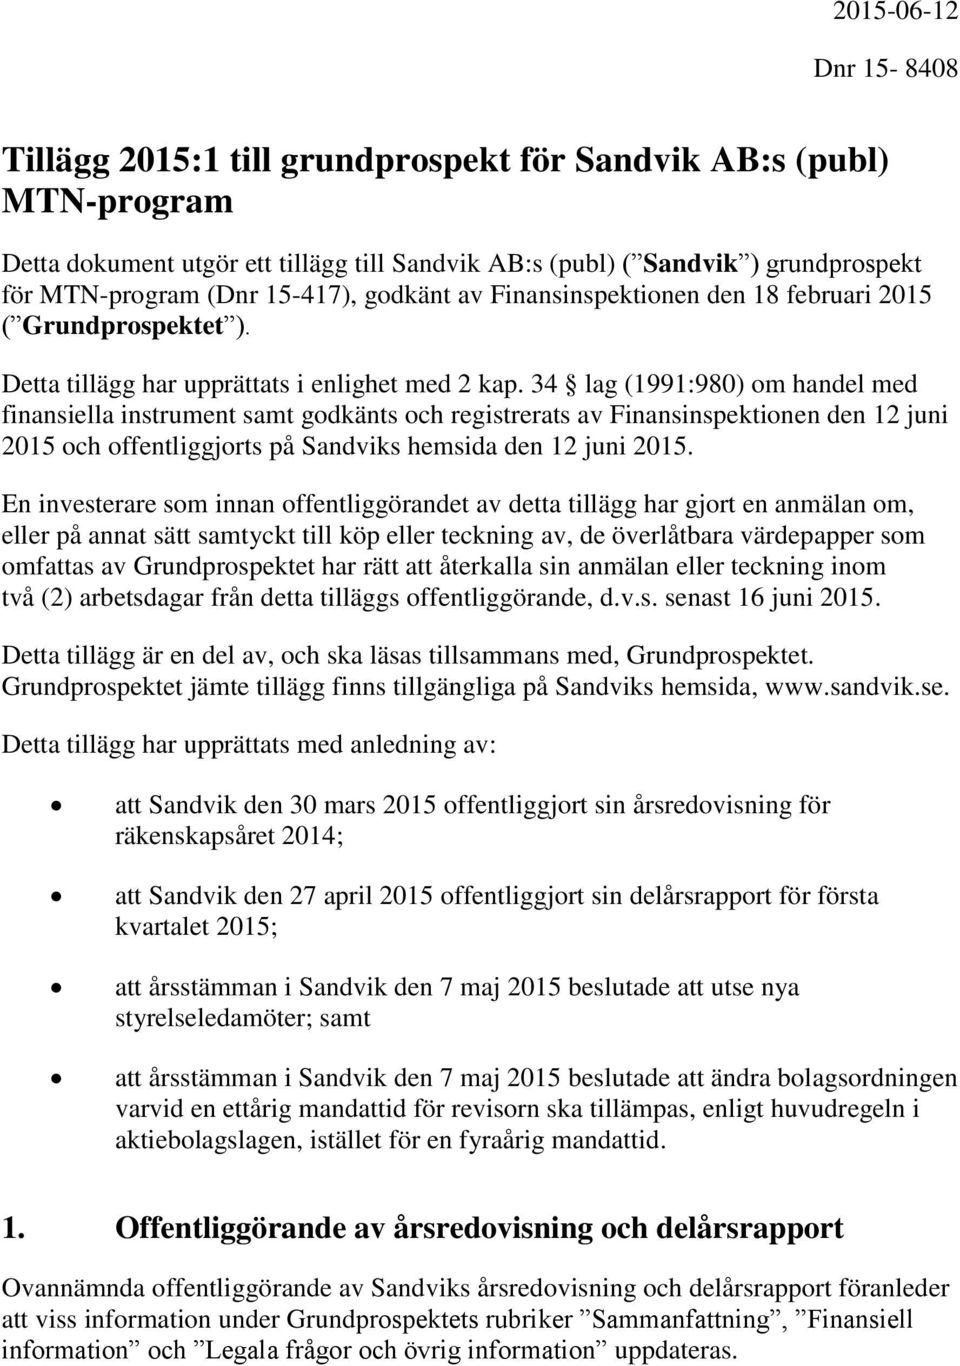 34 lag (1991:980) om handel med finansiella instrument samt godkänts och registrerats av Finansinspektionen den 12 juni 2015 och offentliggjorts på Sandviks hemsida den 12 juni 2015.